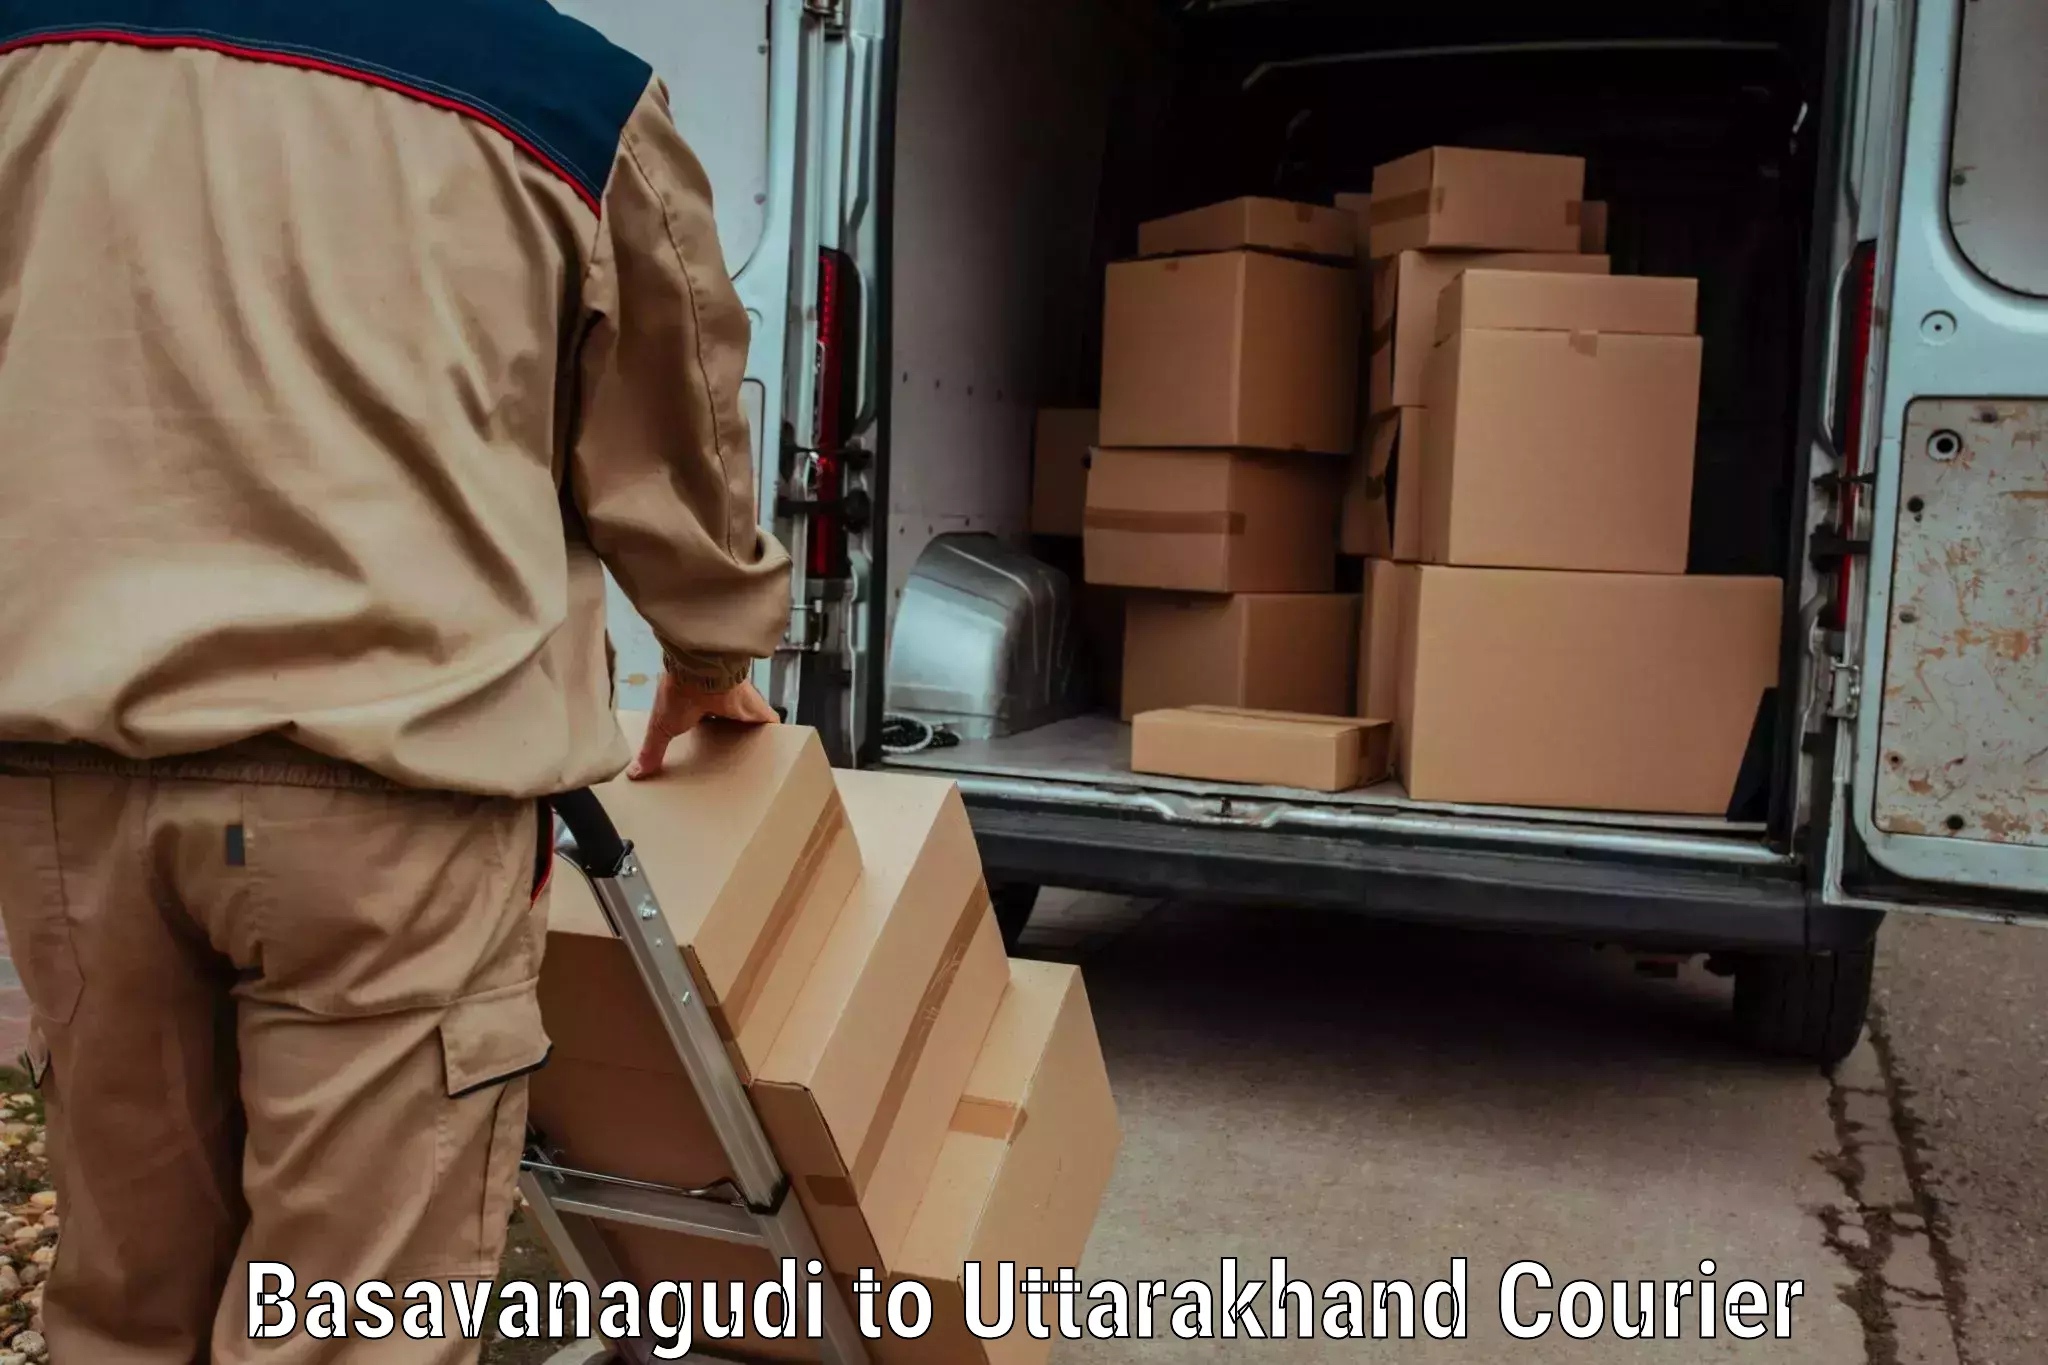 Next day courier Basavanagudi to Rishikesh